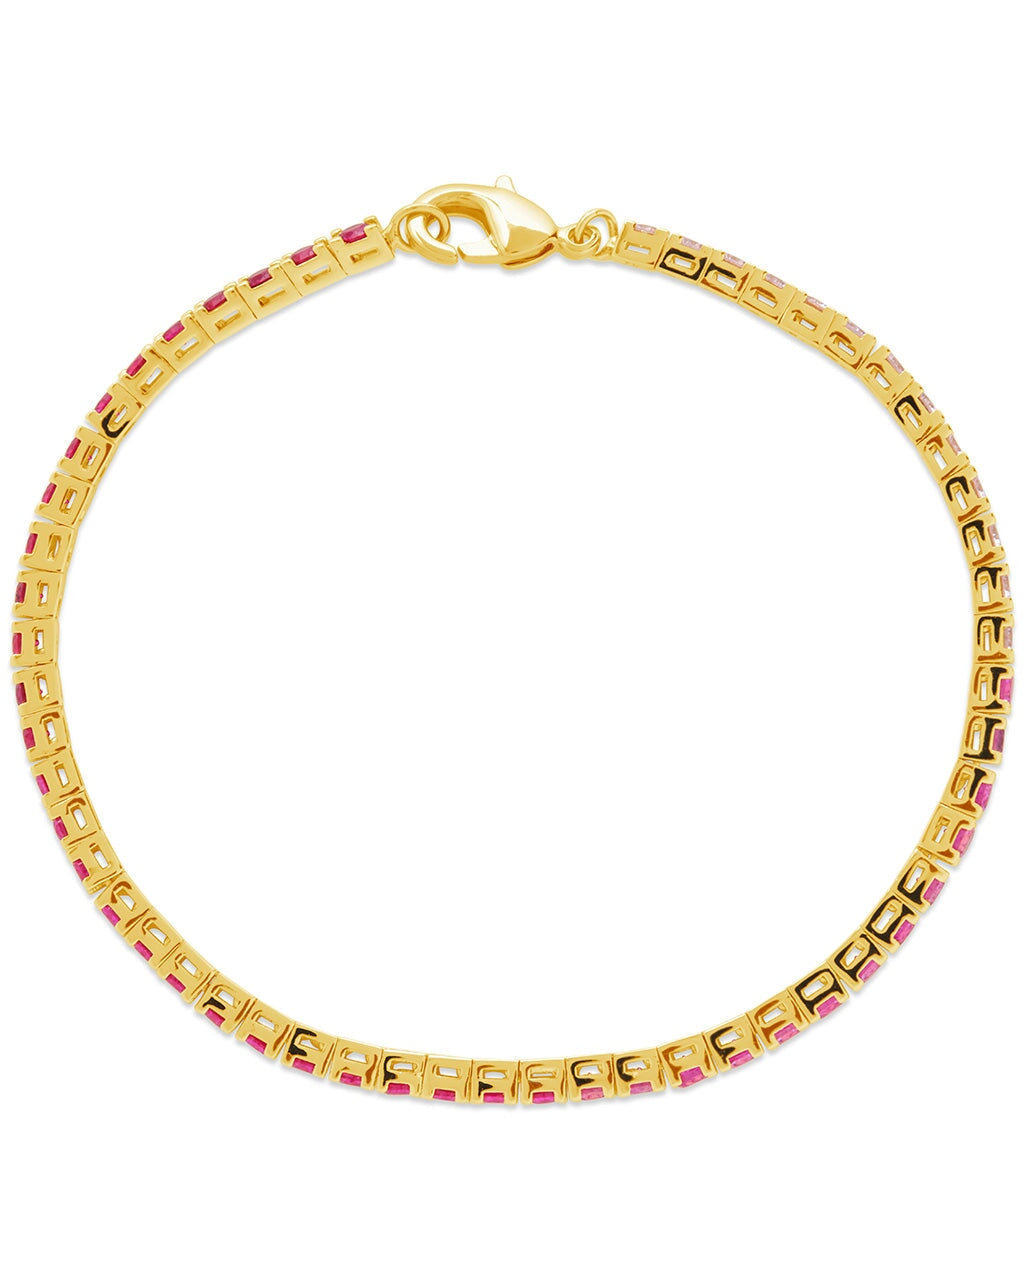 Hues of Pink Tennis Bracelet Bracelet Sterling Forever 